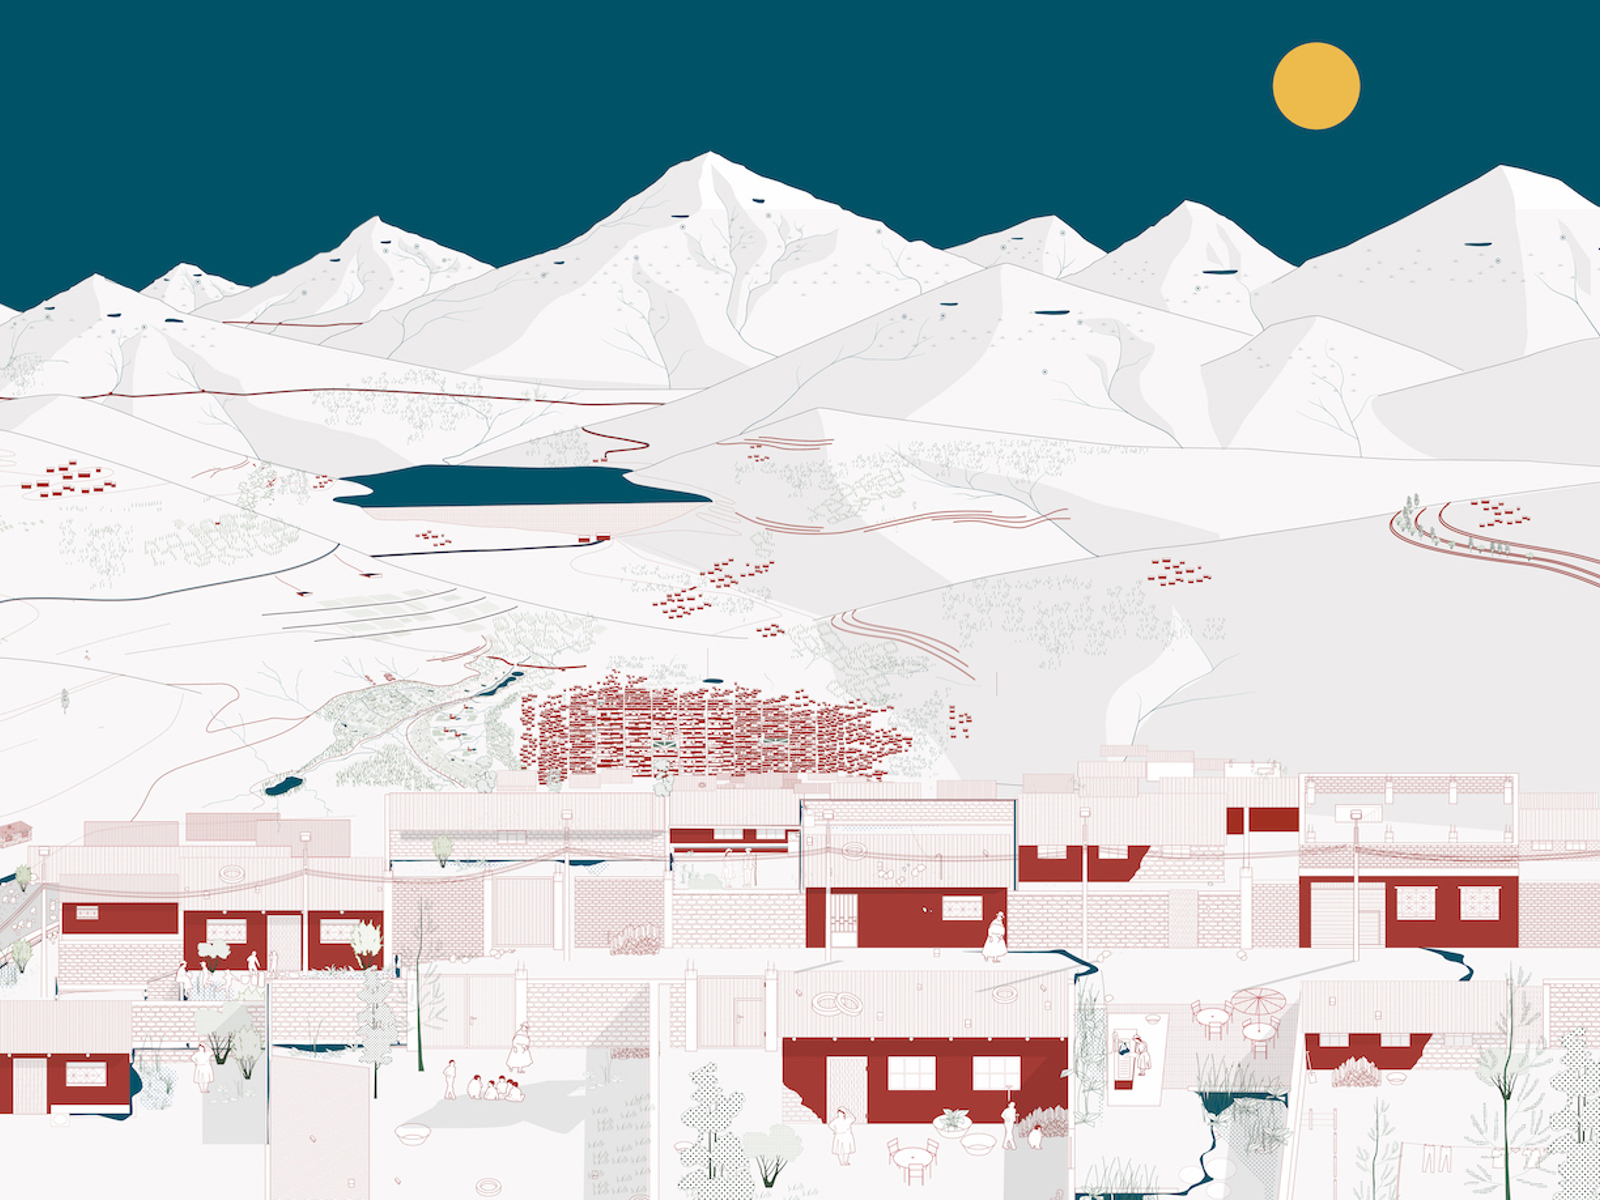 Røde hus i et vinterlandskap med fjell og måne. Illustrasjon.